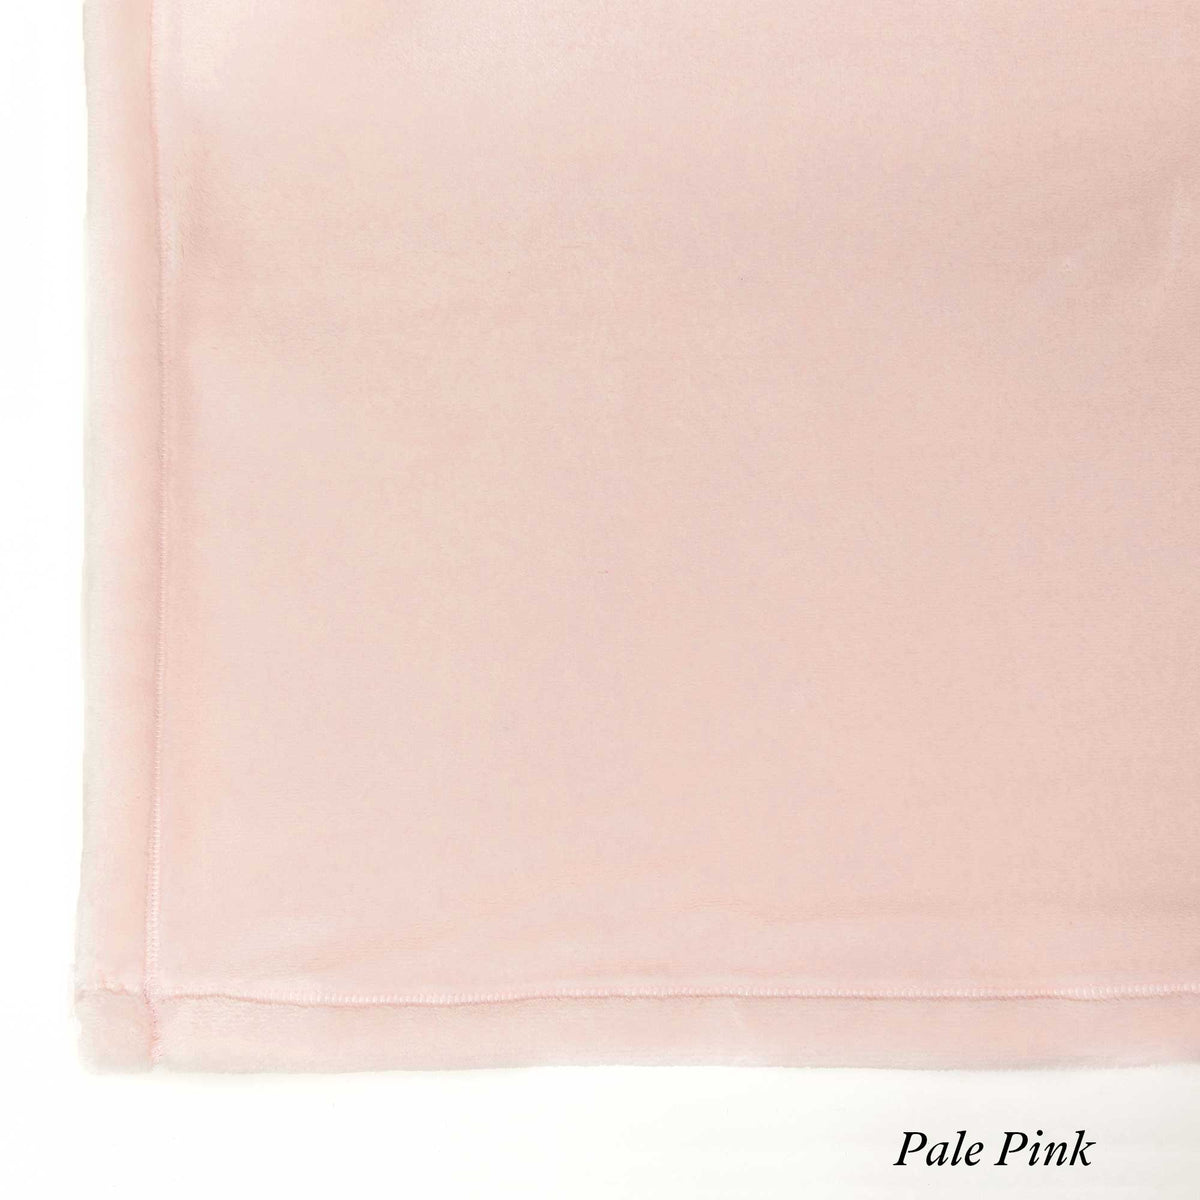 Pale Pink - The Best Fleece Blankets - Custom Size Luster Loft Fleece Blankets - American Blanket Company